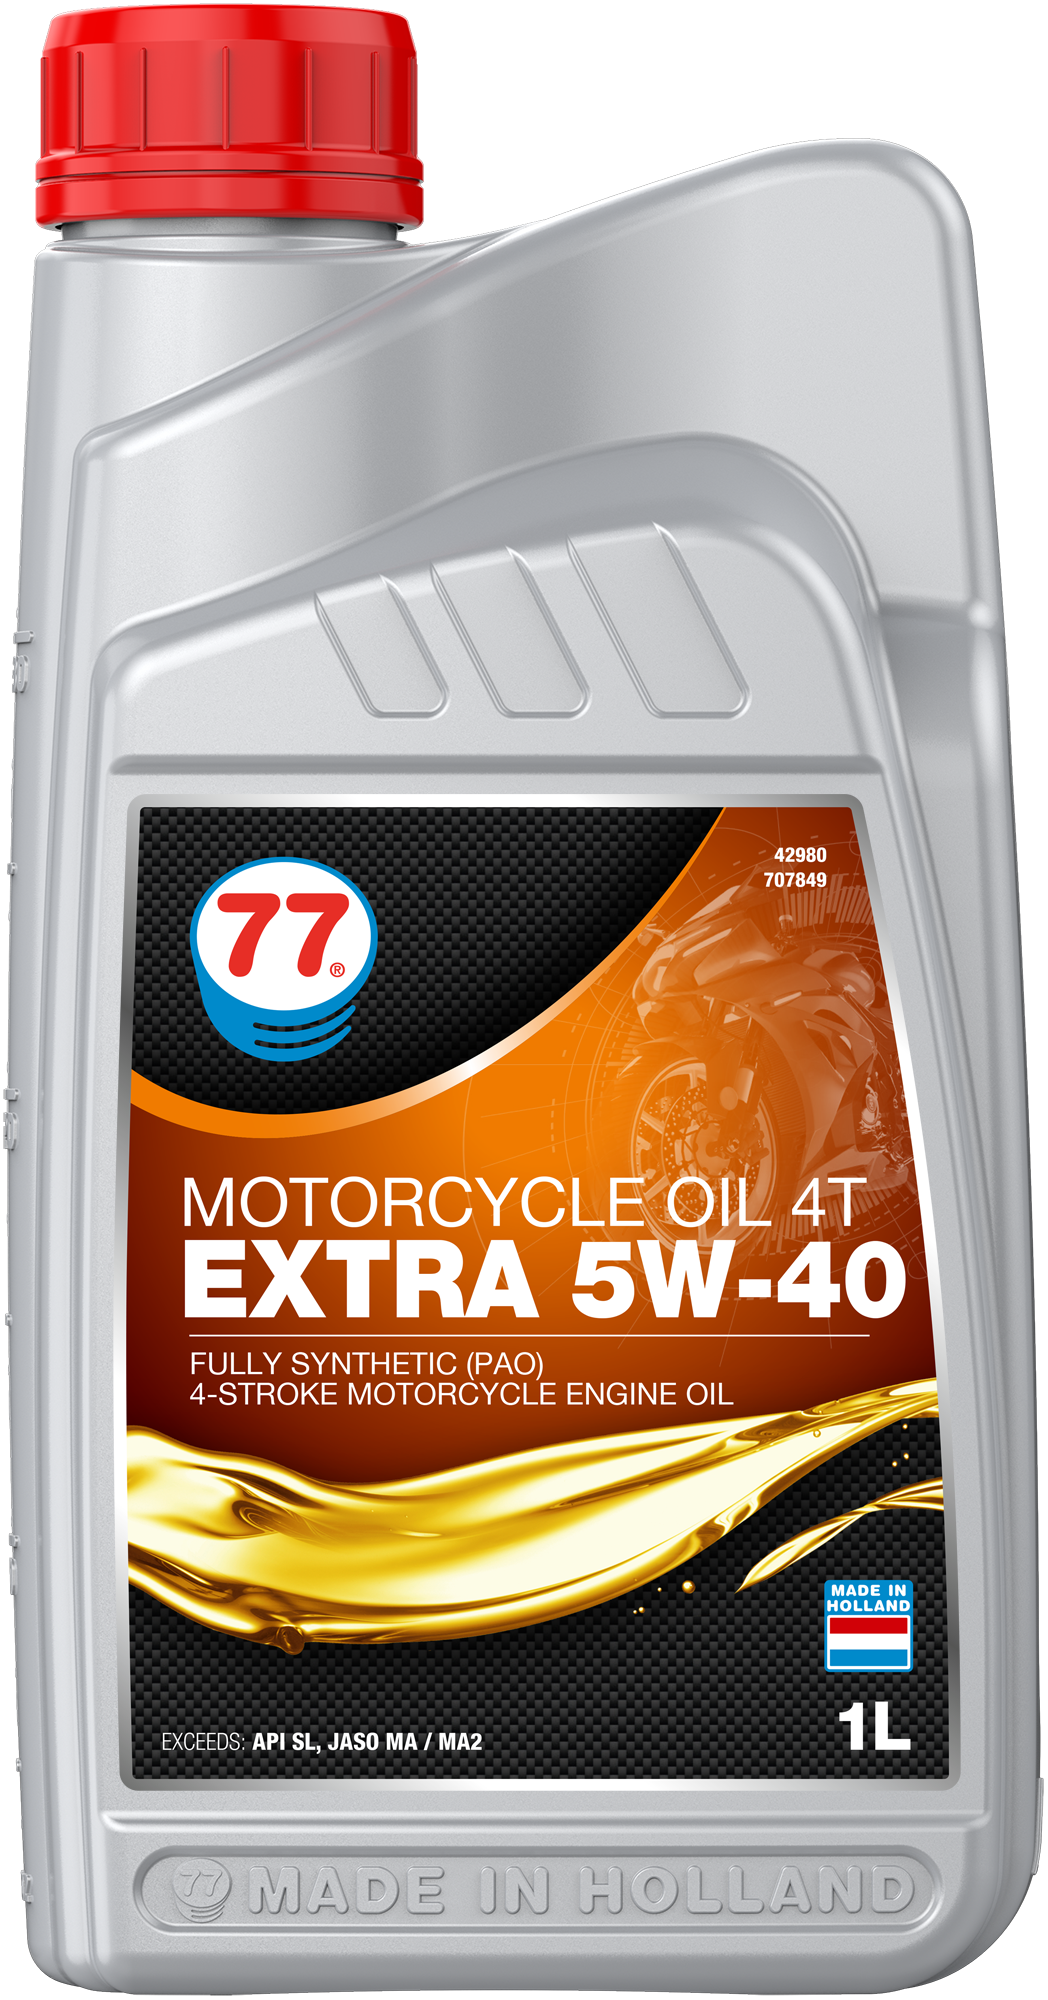 4298-1 Motorcycle Oil 4T Extra 5W-40 is een high performance 4-takt benzinemotor olie speciaal ontwikkeld om te voldoen aan de speciale eisen van de nieuwste high performance luchtgekoelde 4-takt motorfietsen.